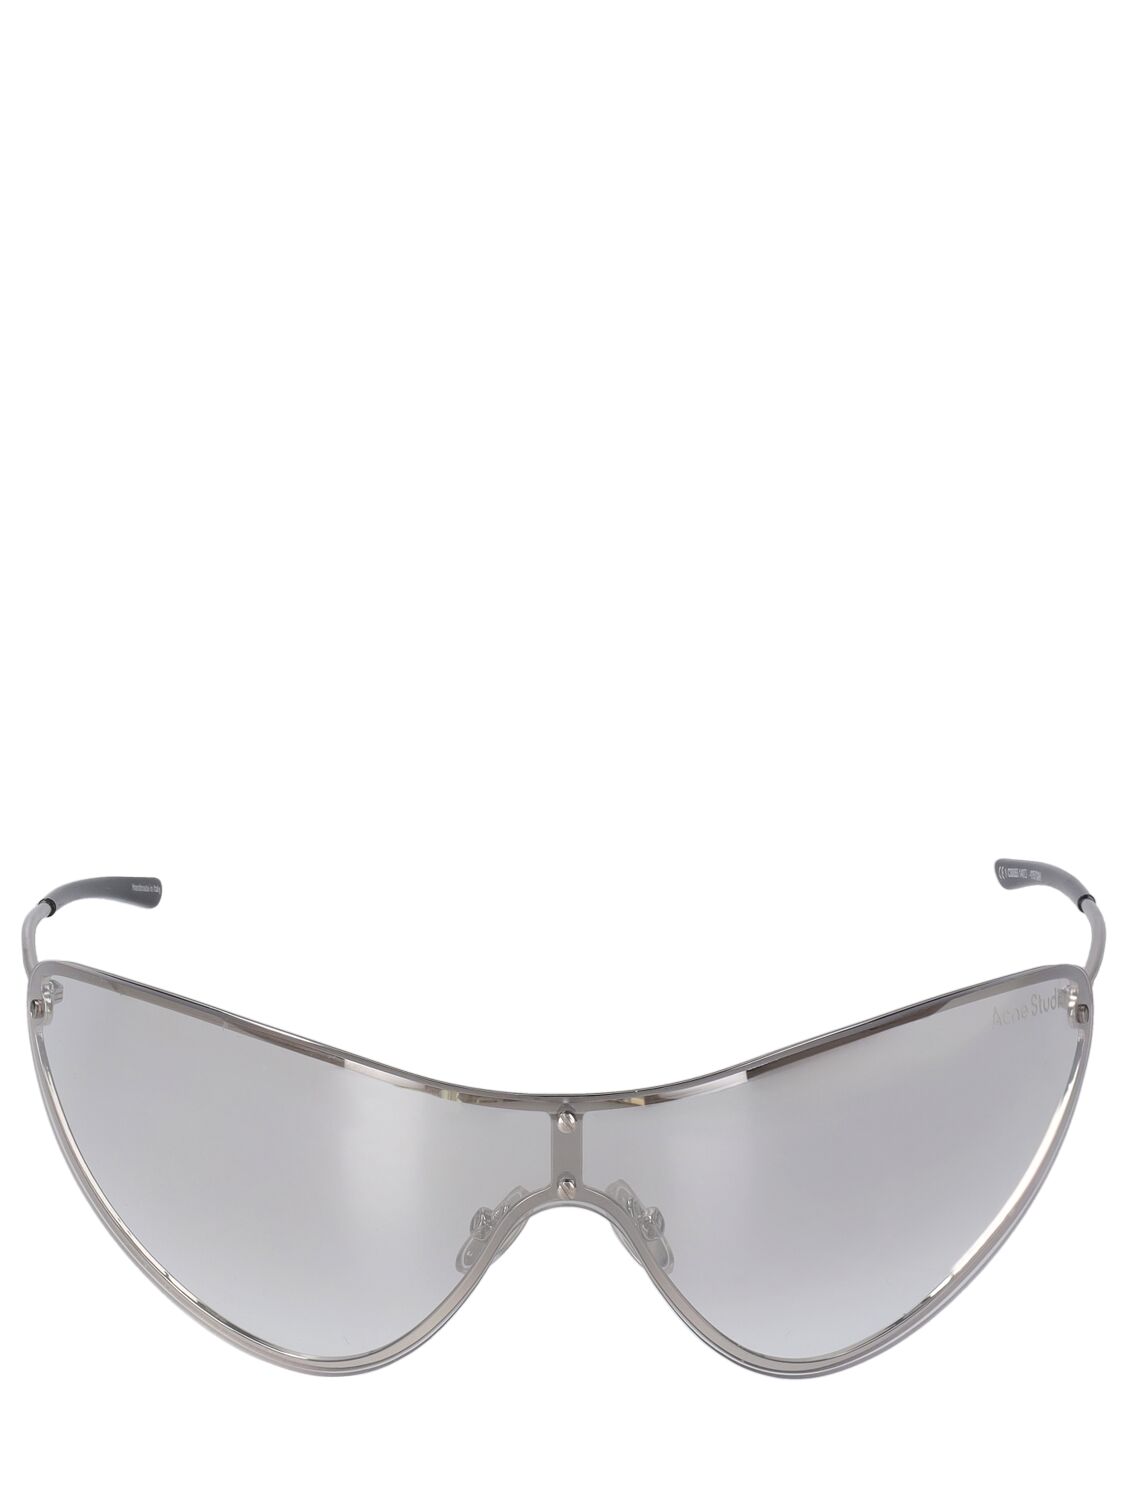 Image of Antus Mask Metal Sunglasses